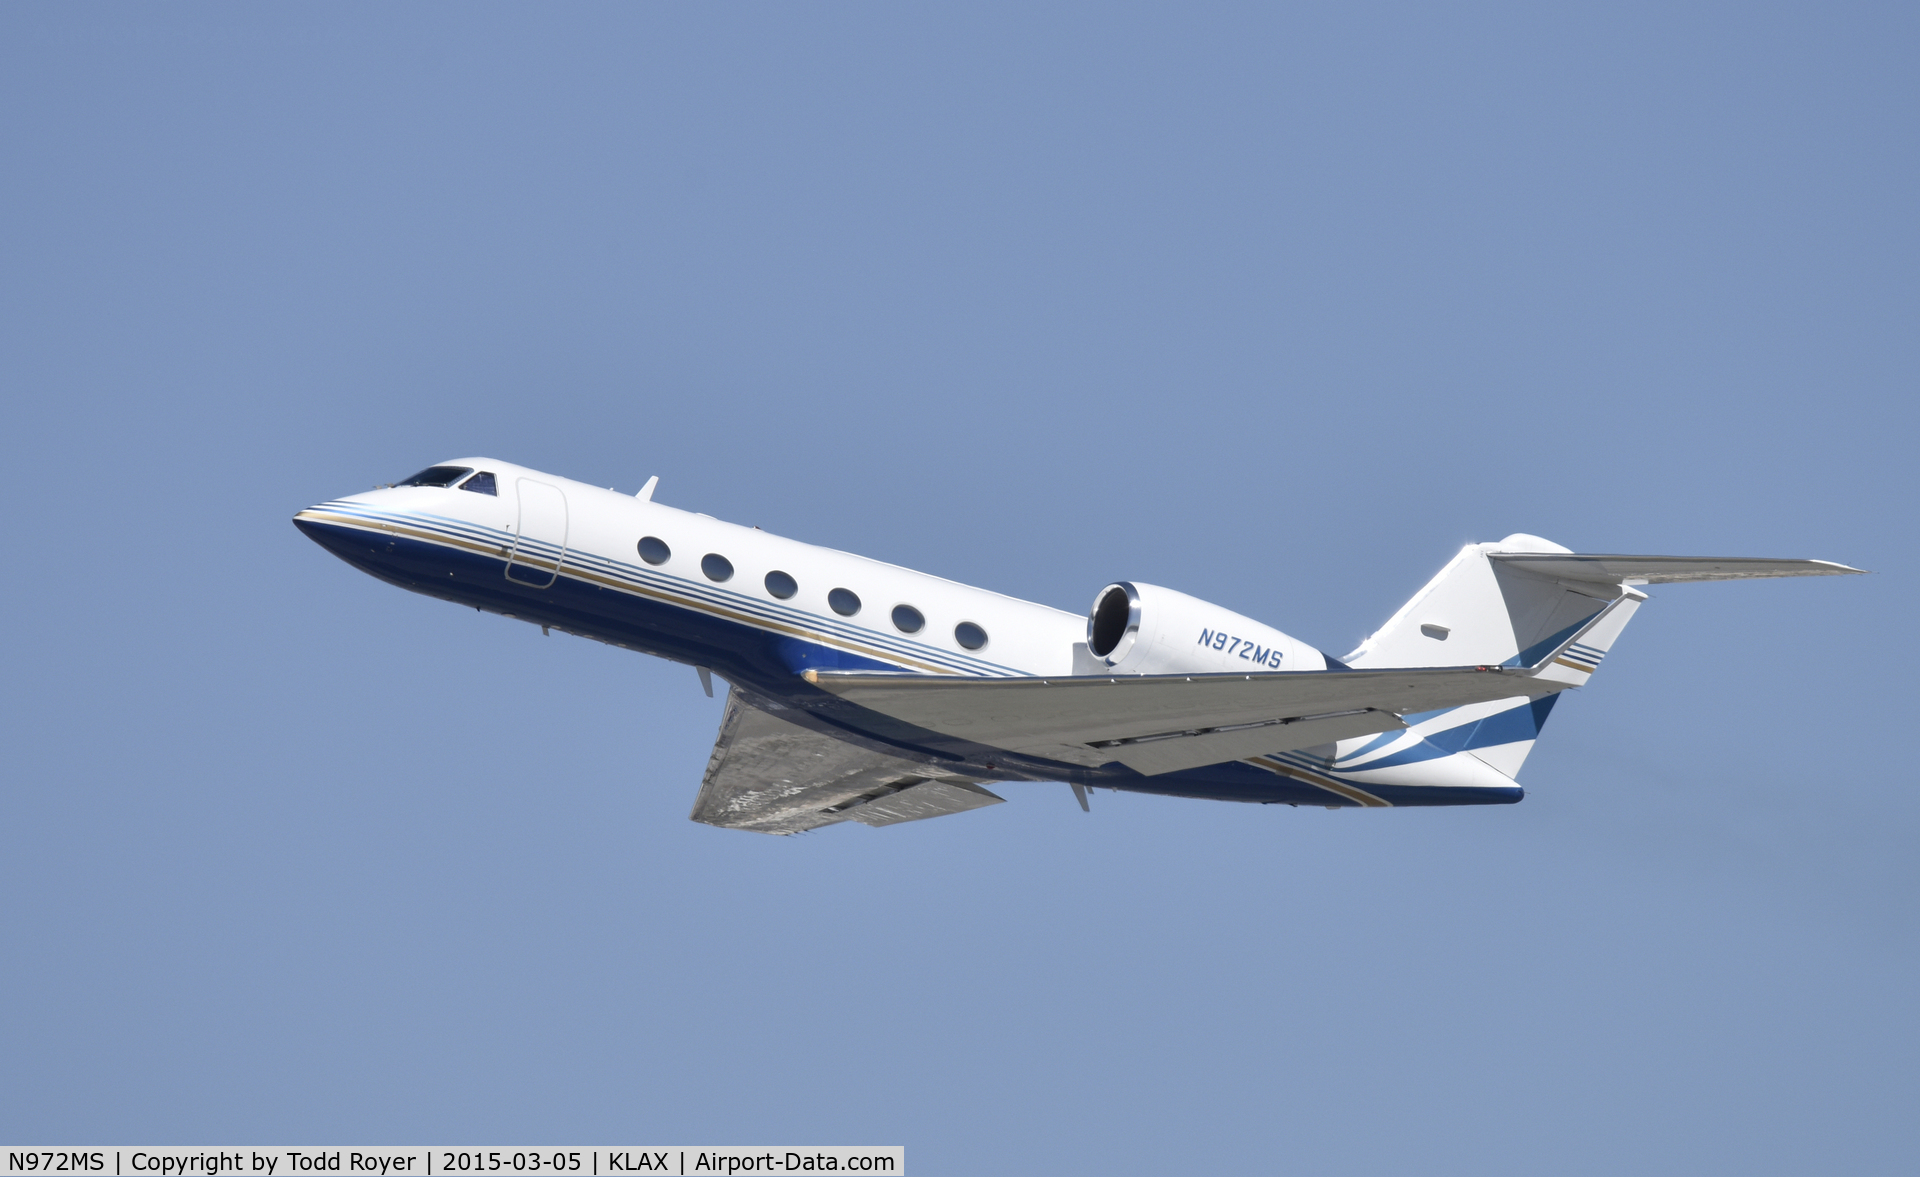 N972MS, 1996 Gulfstream Aerospace G-IV C/N 1285, Departing LAX on 25R